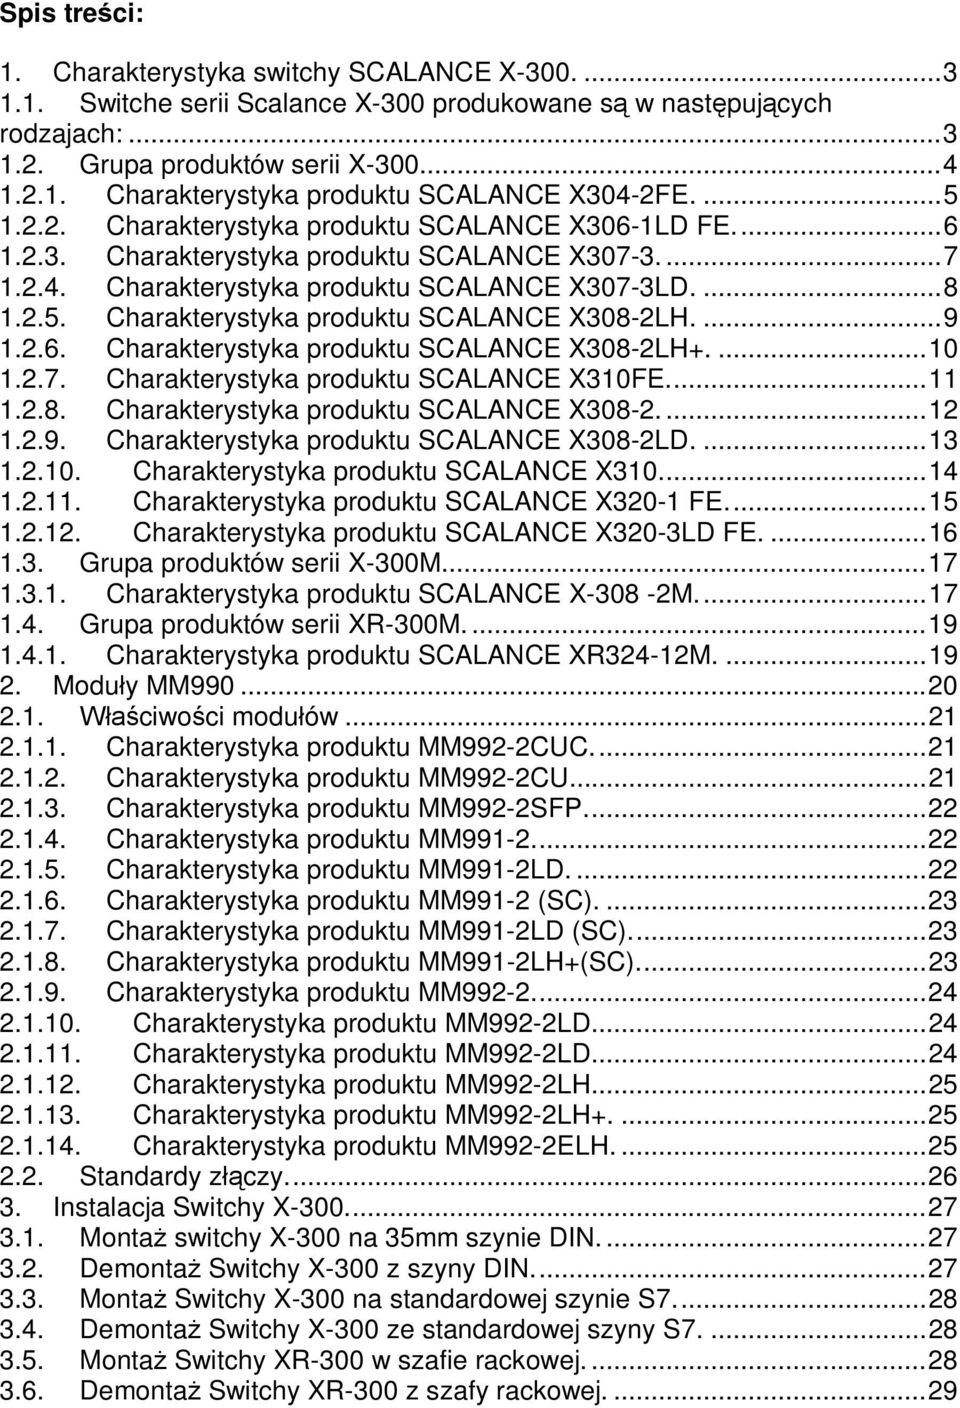 ...9 1.2.6. Charakterystyka produktu SCALANCE X308-2LH+....10 1.2.7. Charakterystyka produktu SCALANCE X310FE...11 1.2.8. Charakterystyka produktu SCALANCE X308-2...12 1.2.9. Charakterystyka produktu SCALANCE X308-2LD.